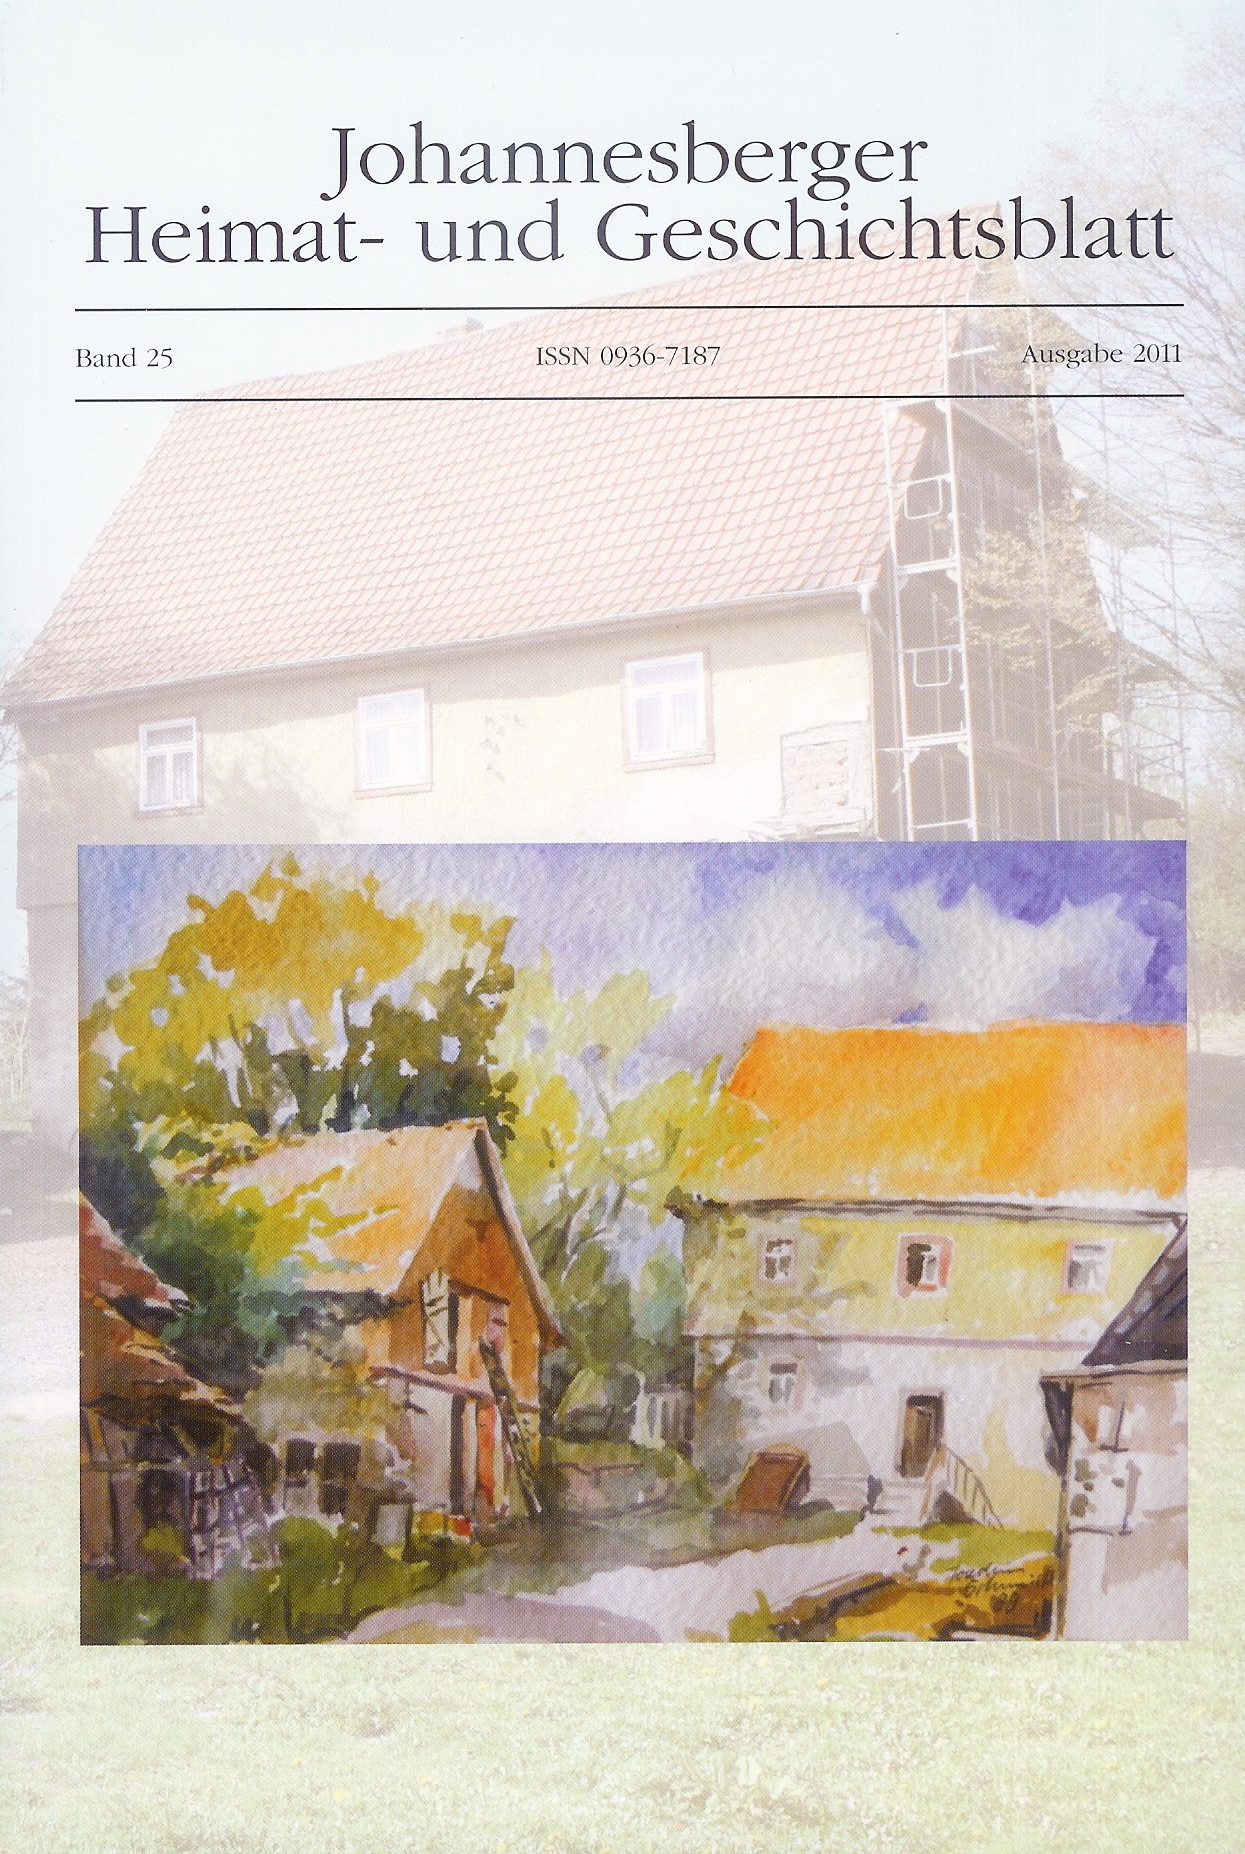 Dieses Bild zeigt das Cover des Jahrbuches 2011